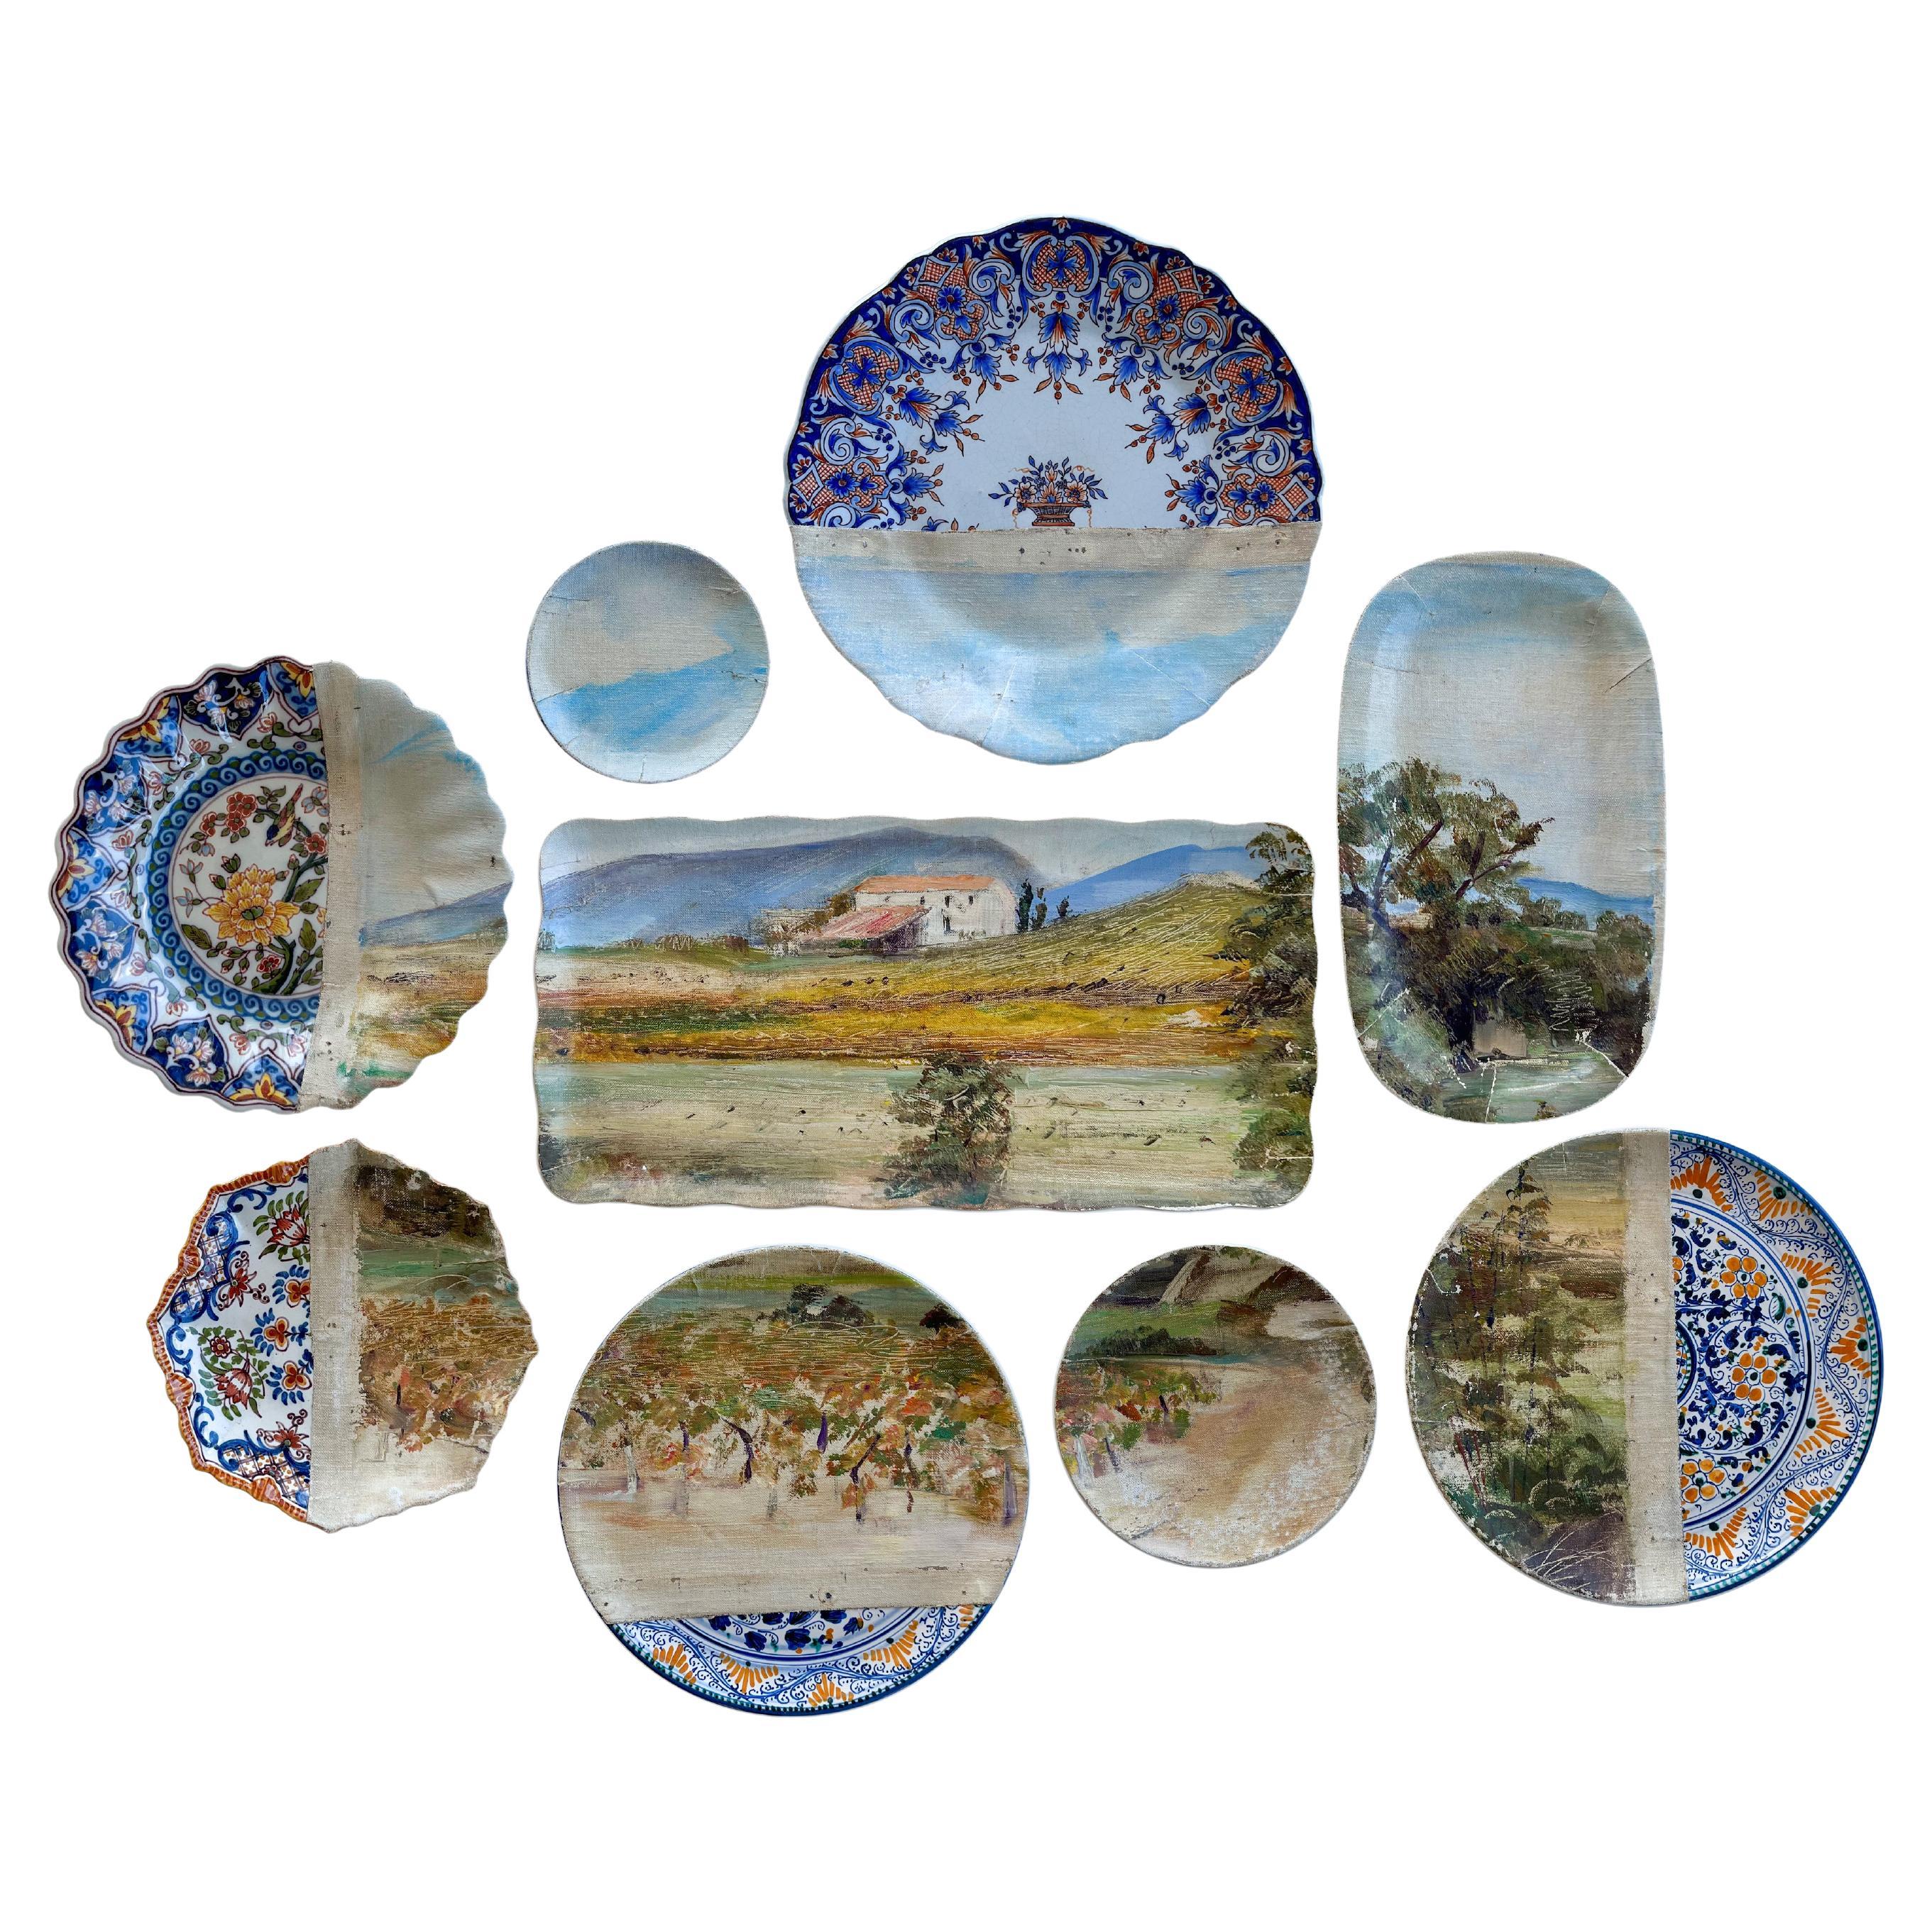 « Vineyard in Provence - Composition d'assiettes décoratives et de peintures murales